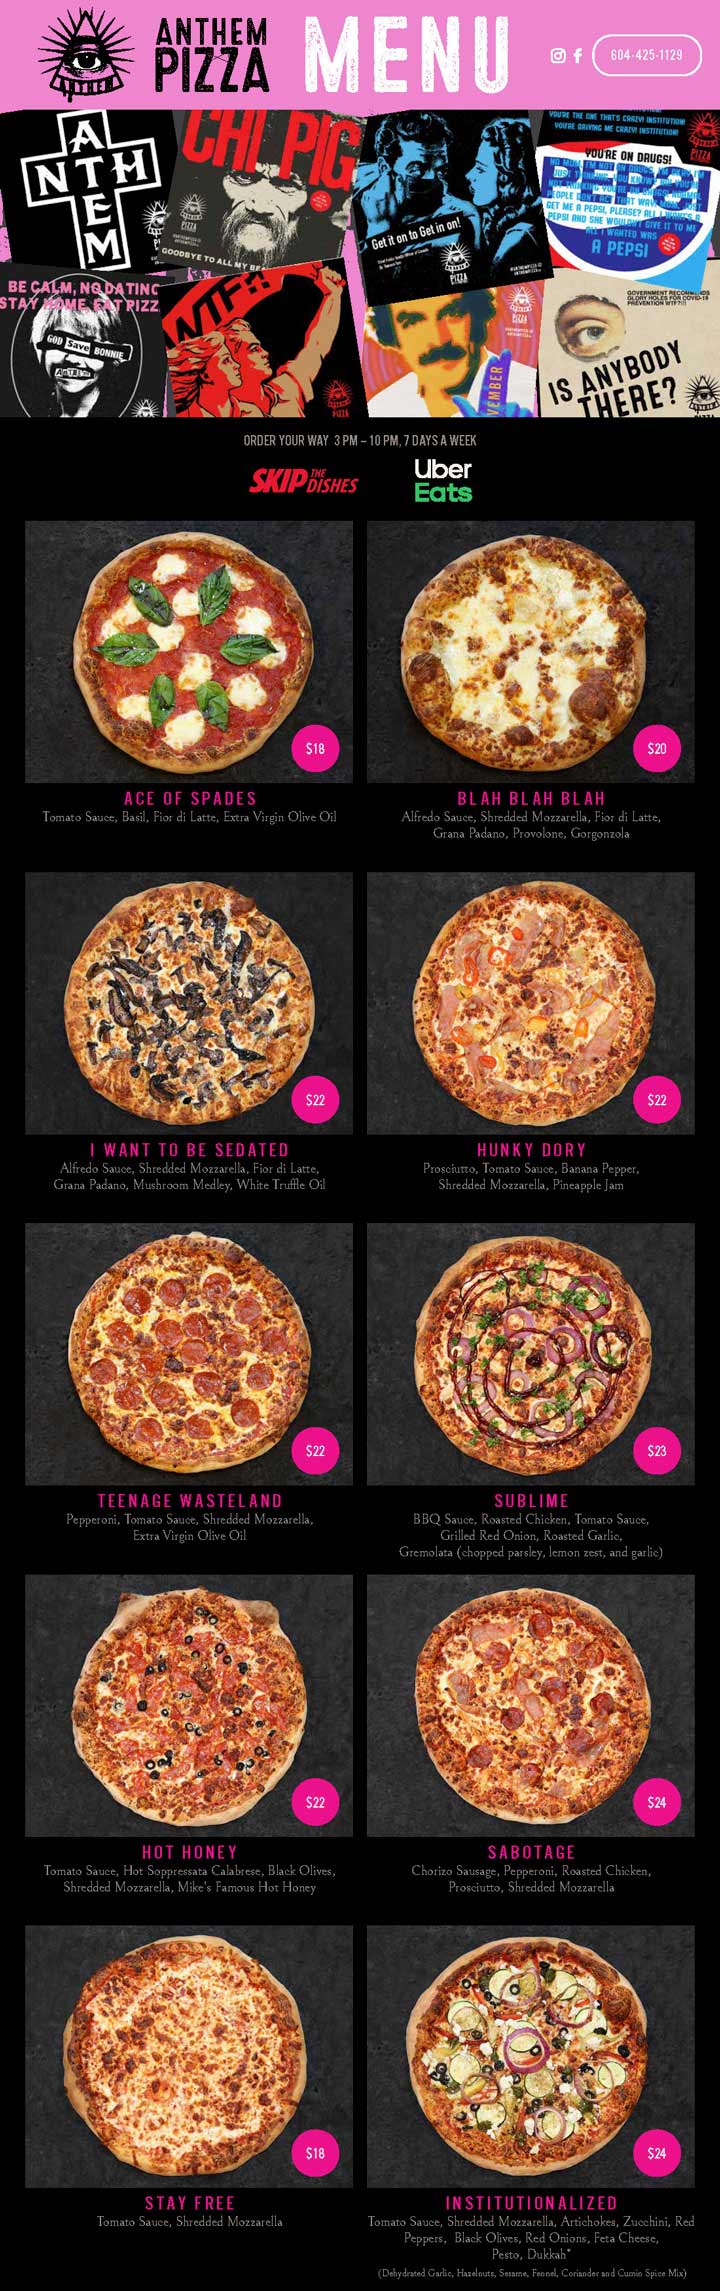 Anthem Pizza Vancouver: Menu, Pickup , Delivery